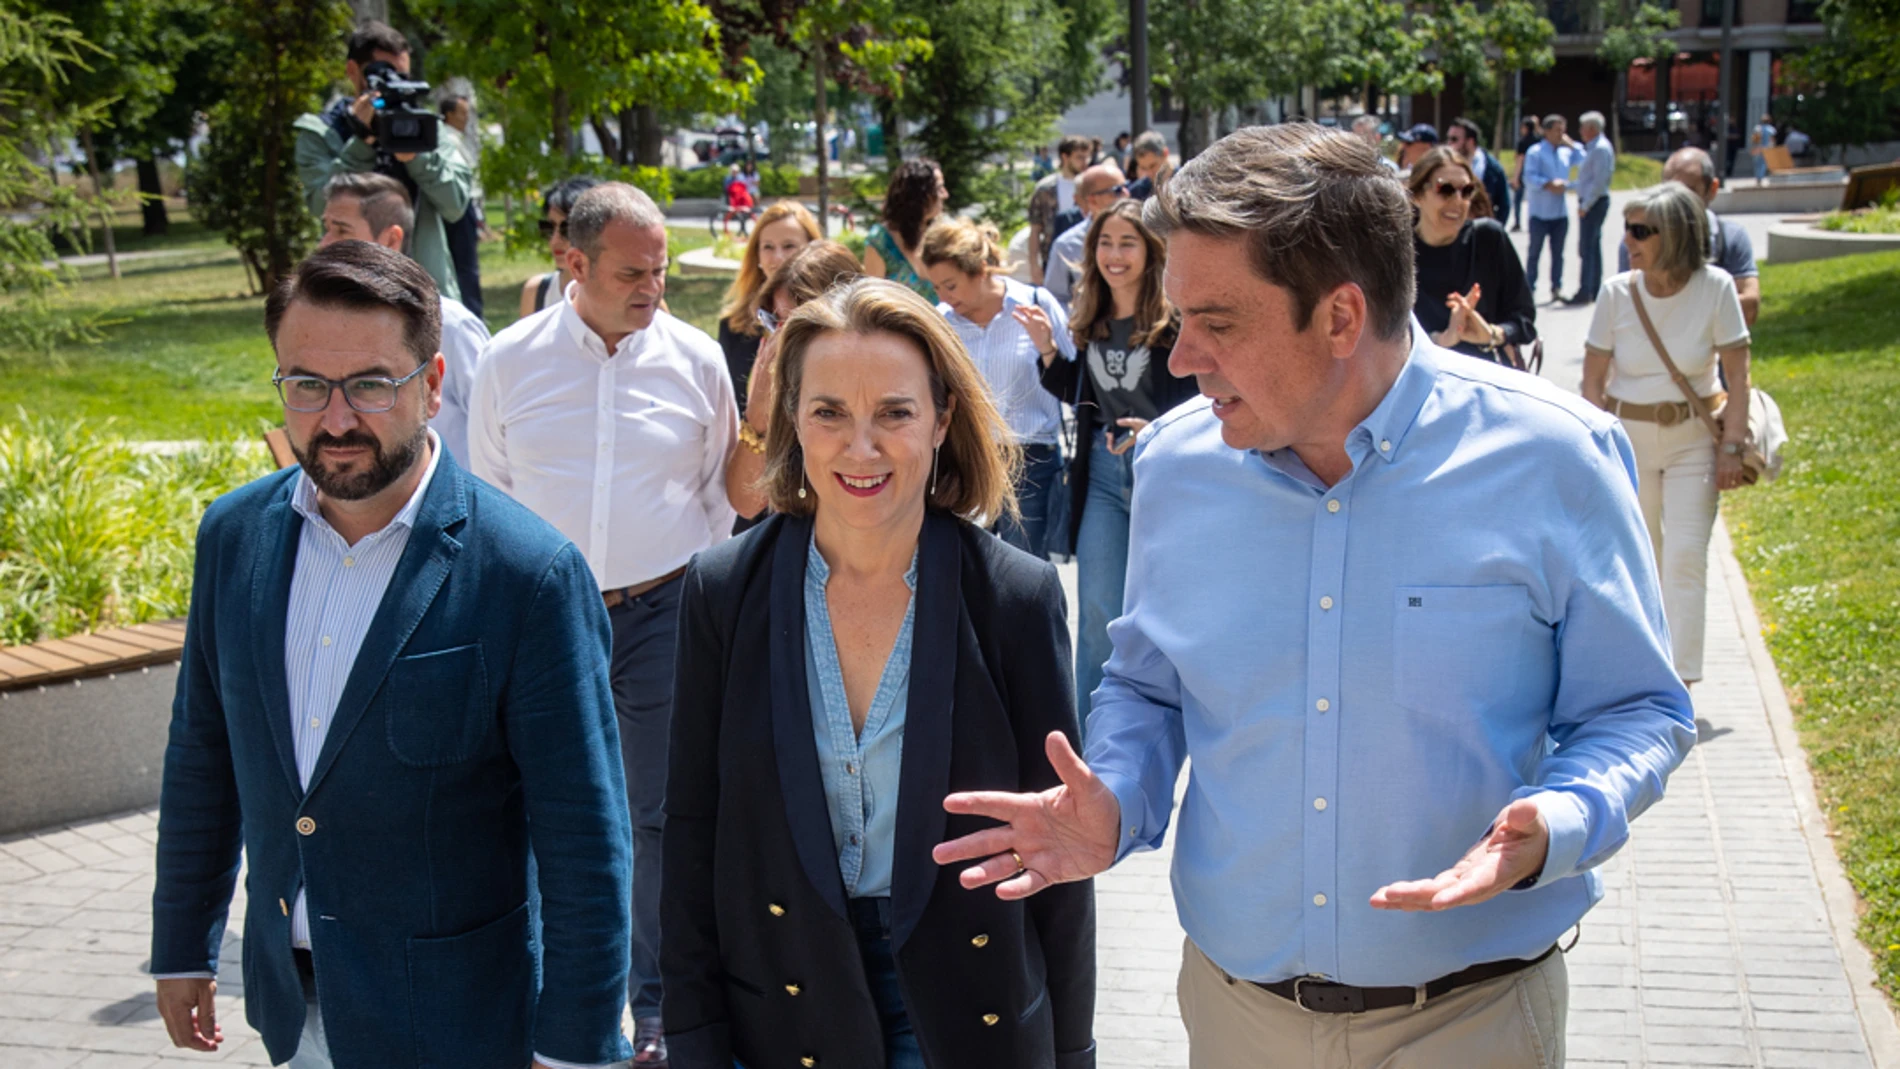 Los pactos entre PP y Vox preocupan a los españoles, aunque los populares aspiran a gobiernos "fuertes" en solitario